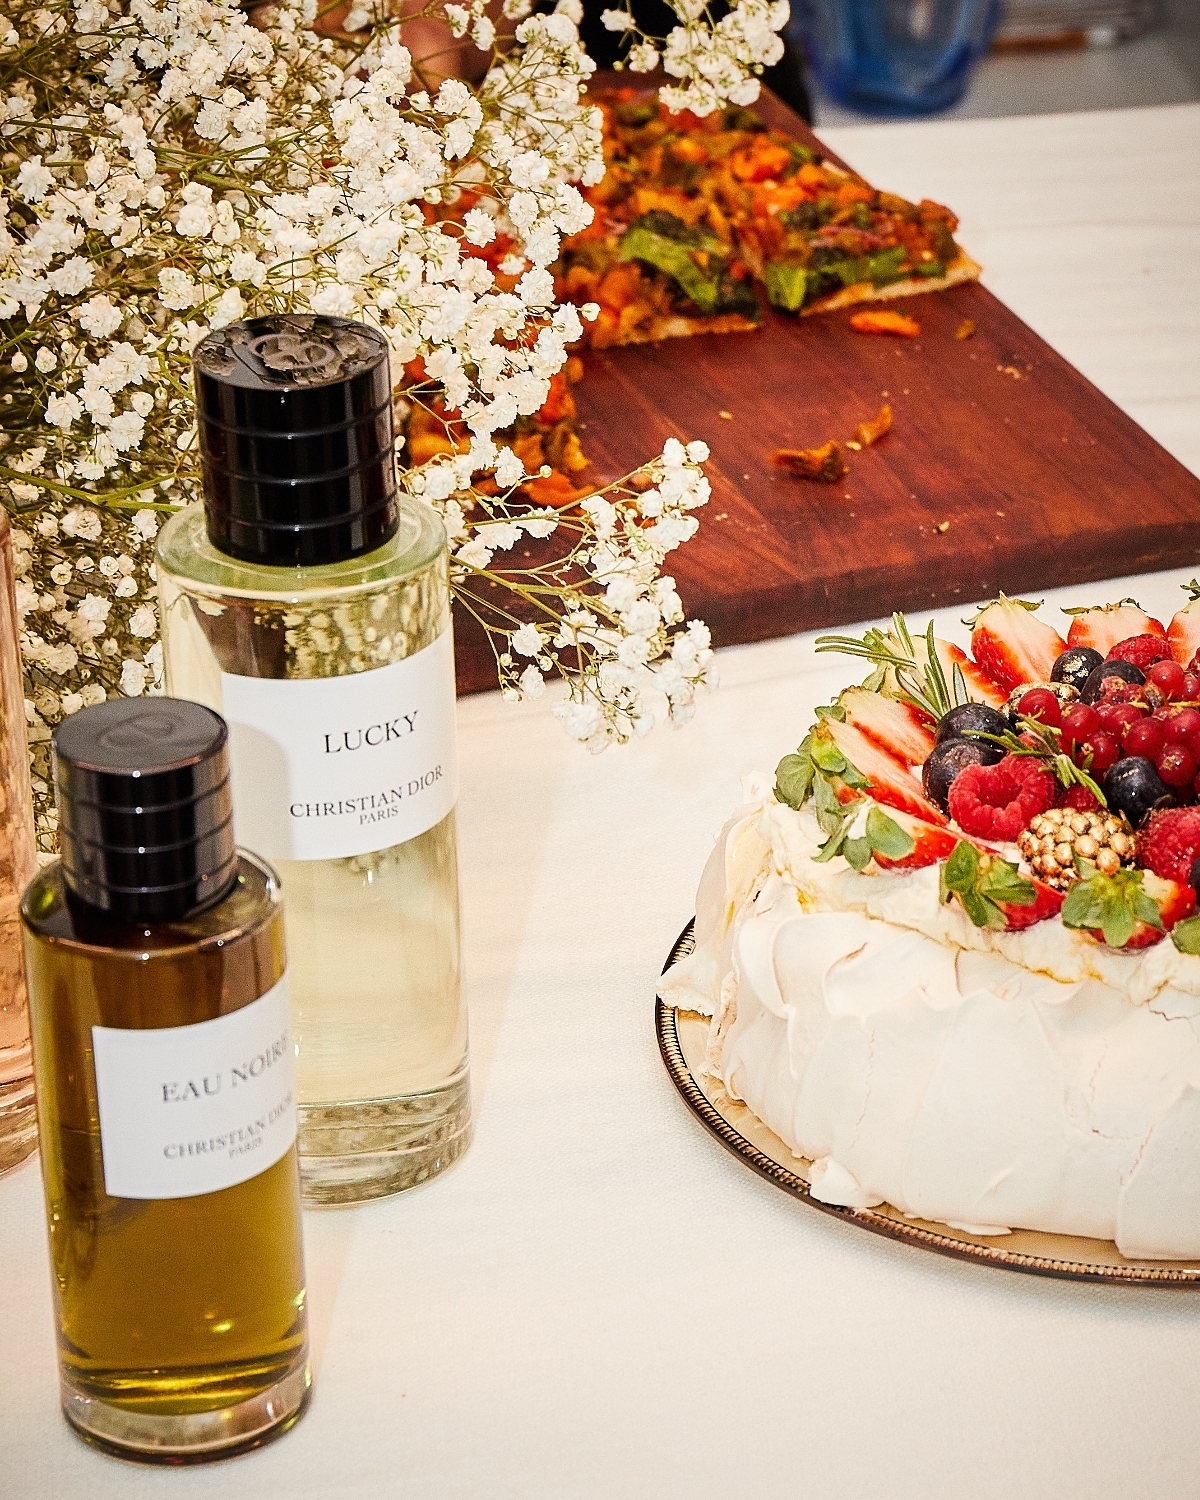 Fragancias y dulces del taller olfativo organizado por los expertos en perfumes de Dior.